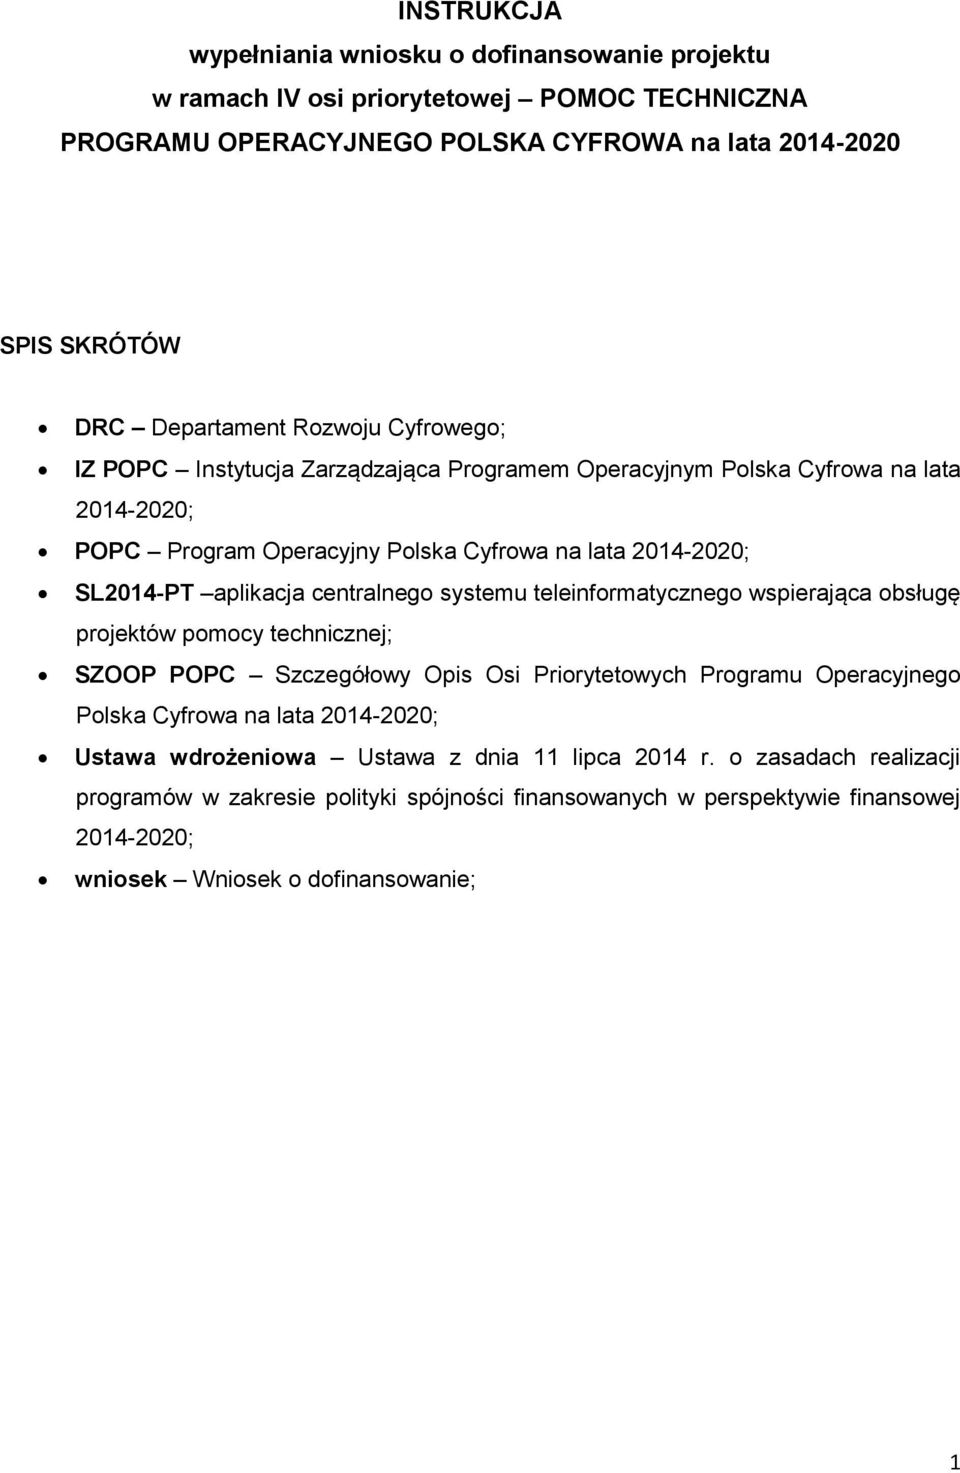 systemu teleinformatycznego wspierająca obsługę projektów pomocy technicznej; SZOOP POPC Szczegółowy Opis Osi Priorytetowych Programu Operacyjnego Polska Cyfrowa na lata 2014-2020; Ustawa